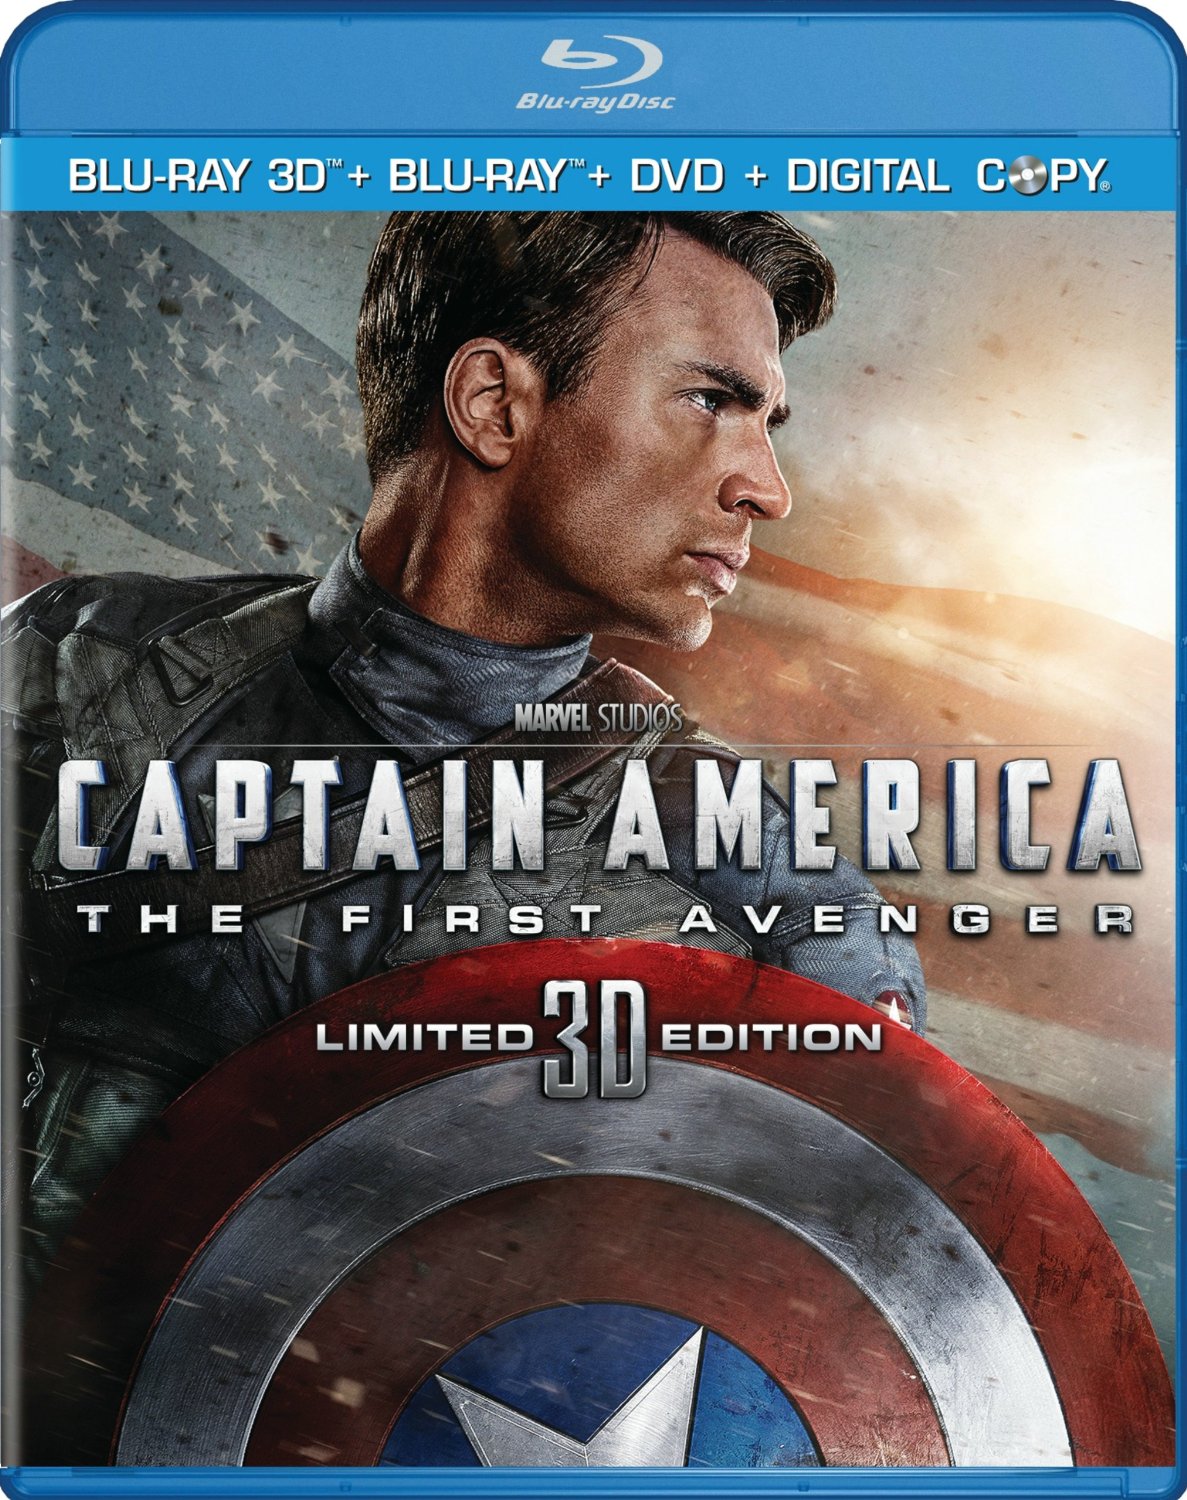 Captain America the First Avenger DVD cover